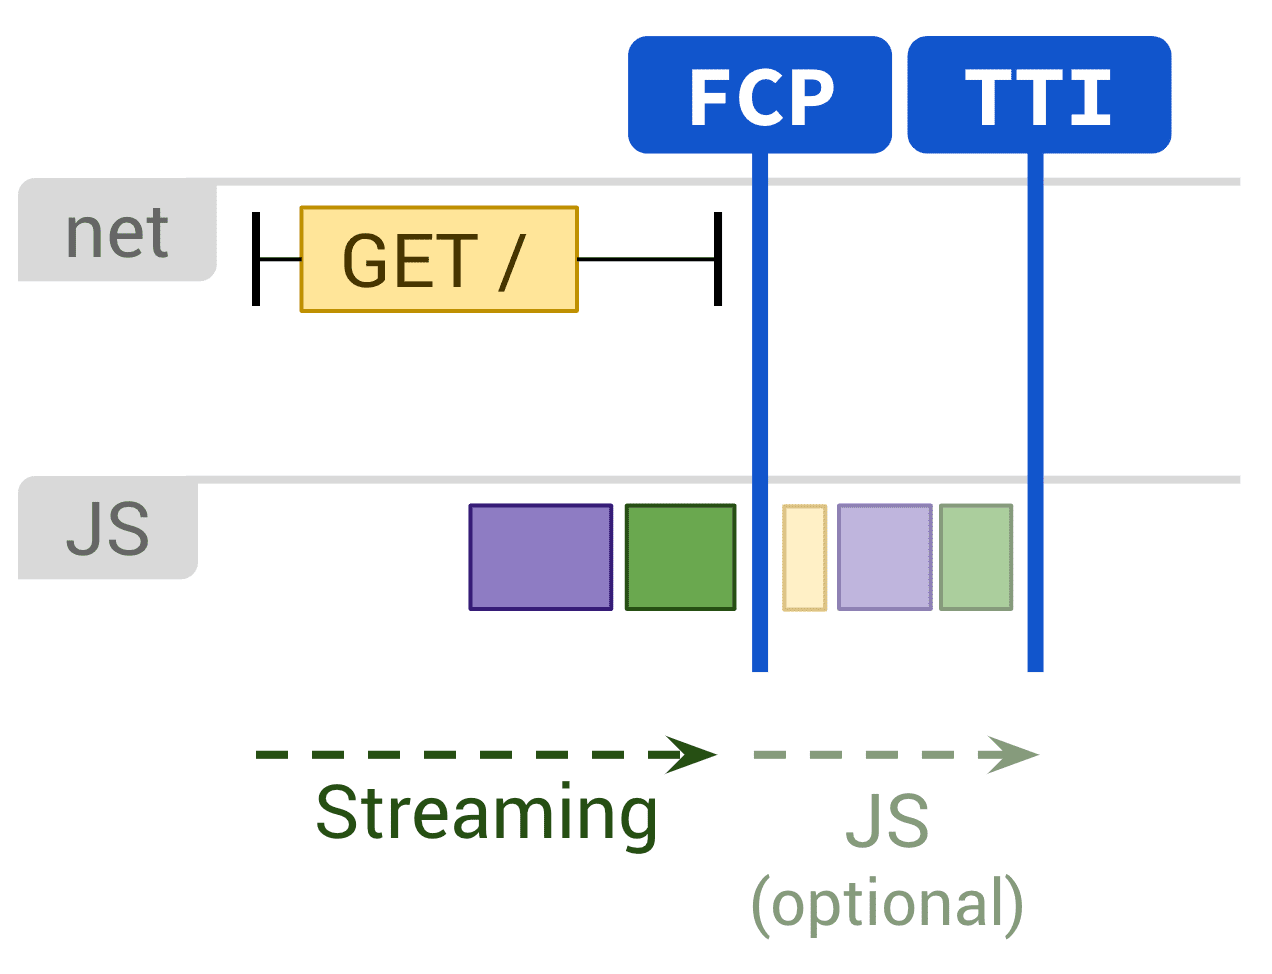 此示意图显示了影响 FCP 和 TTI 的静态渲染和可选的 JS 执行。